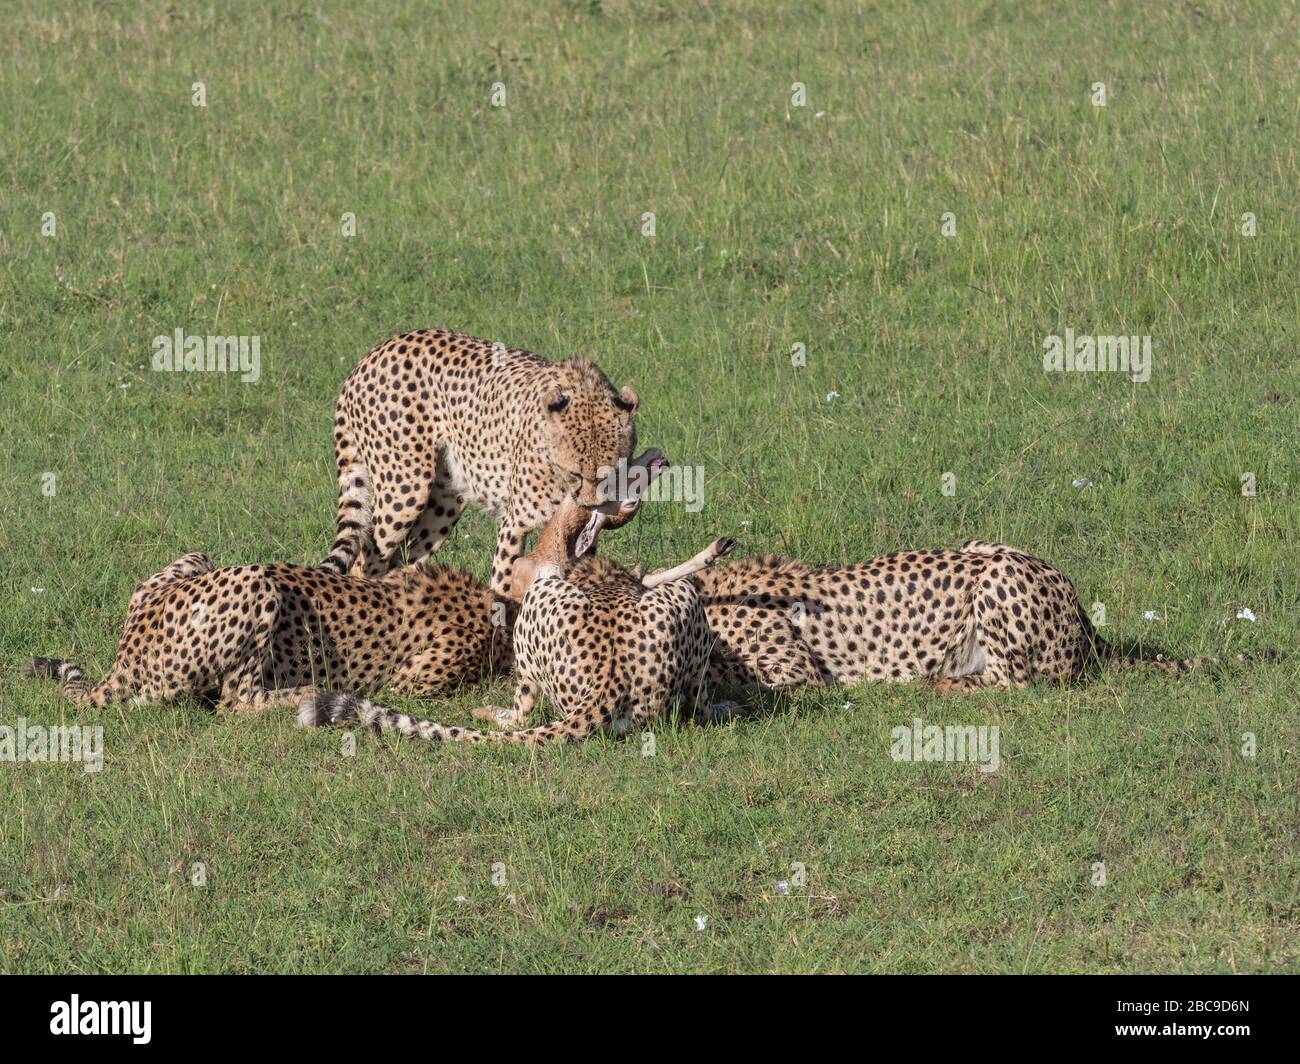 Groupe de Cheetah mâle (Acinonyx jubatus) avec un veau de Topi (Damaliscus lunatus), réserve nationale de Maasai Mara, Kenya Banque D'Images